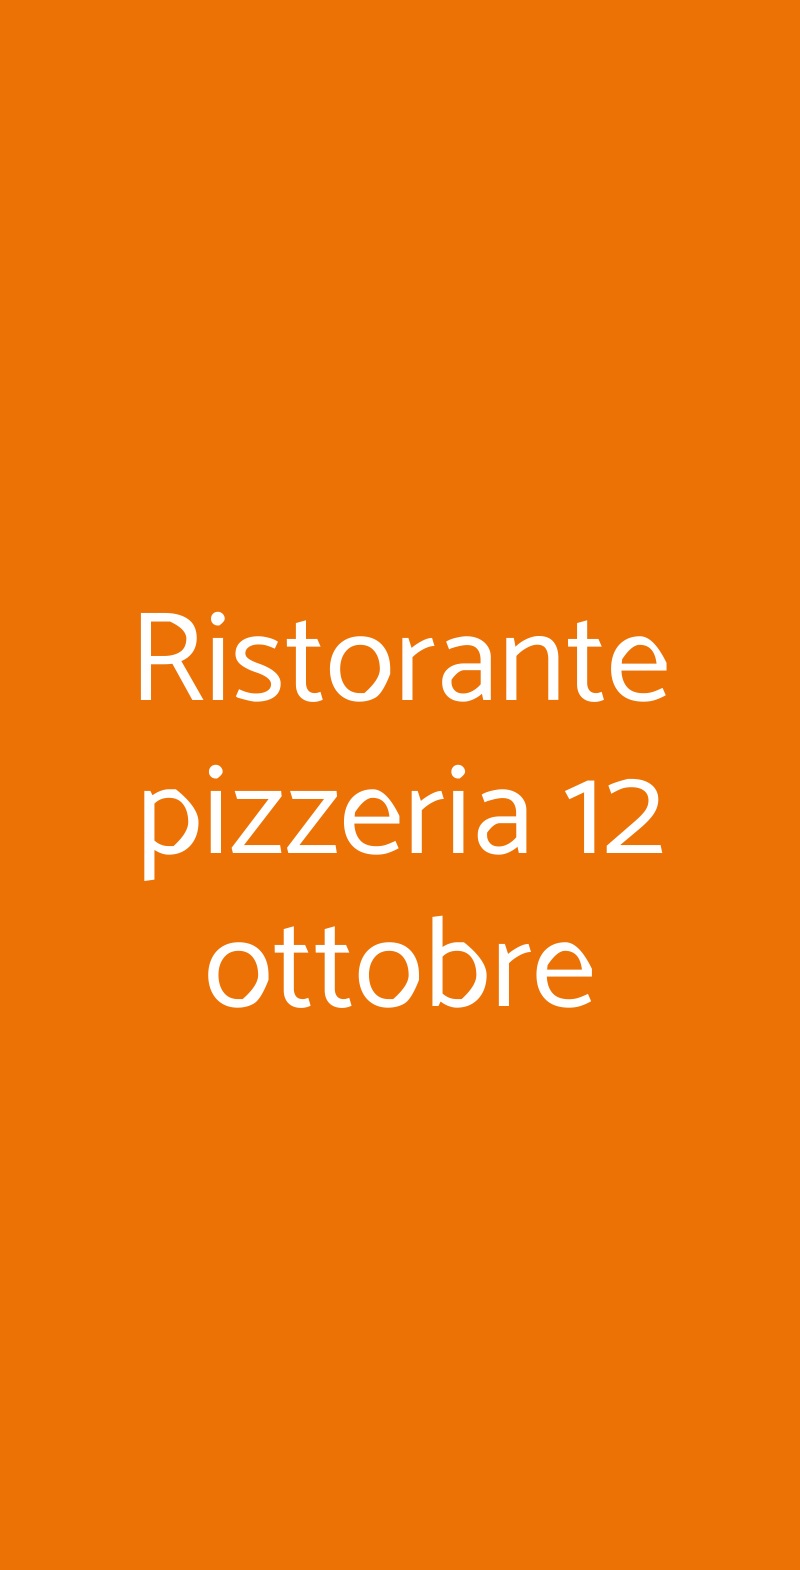 Ristorante pizzeria 12 ottobre Torino menù 1 pagina